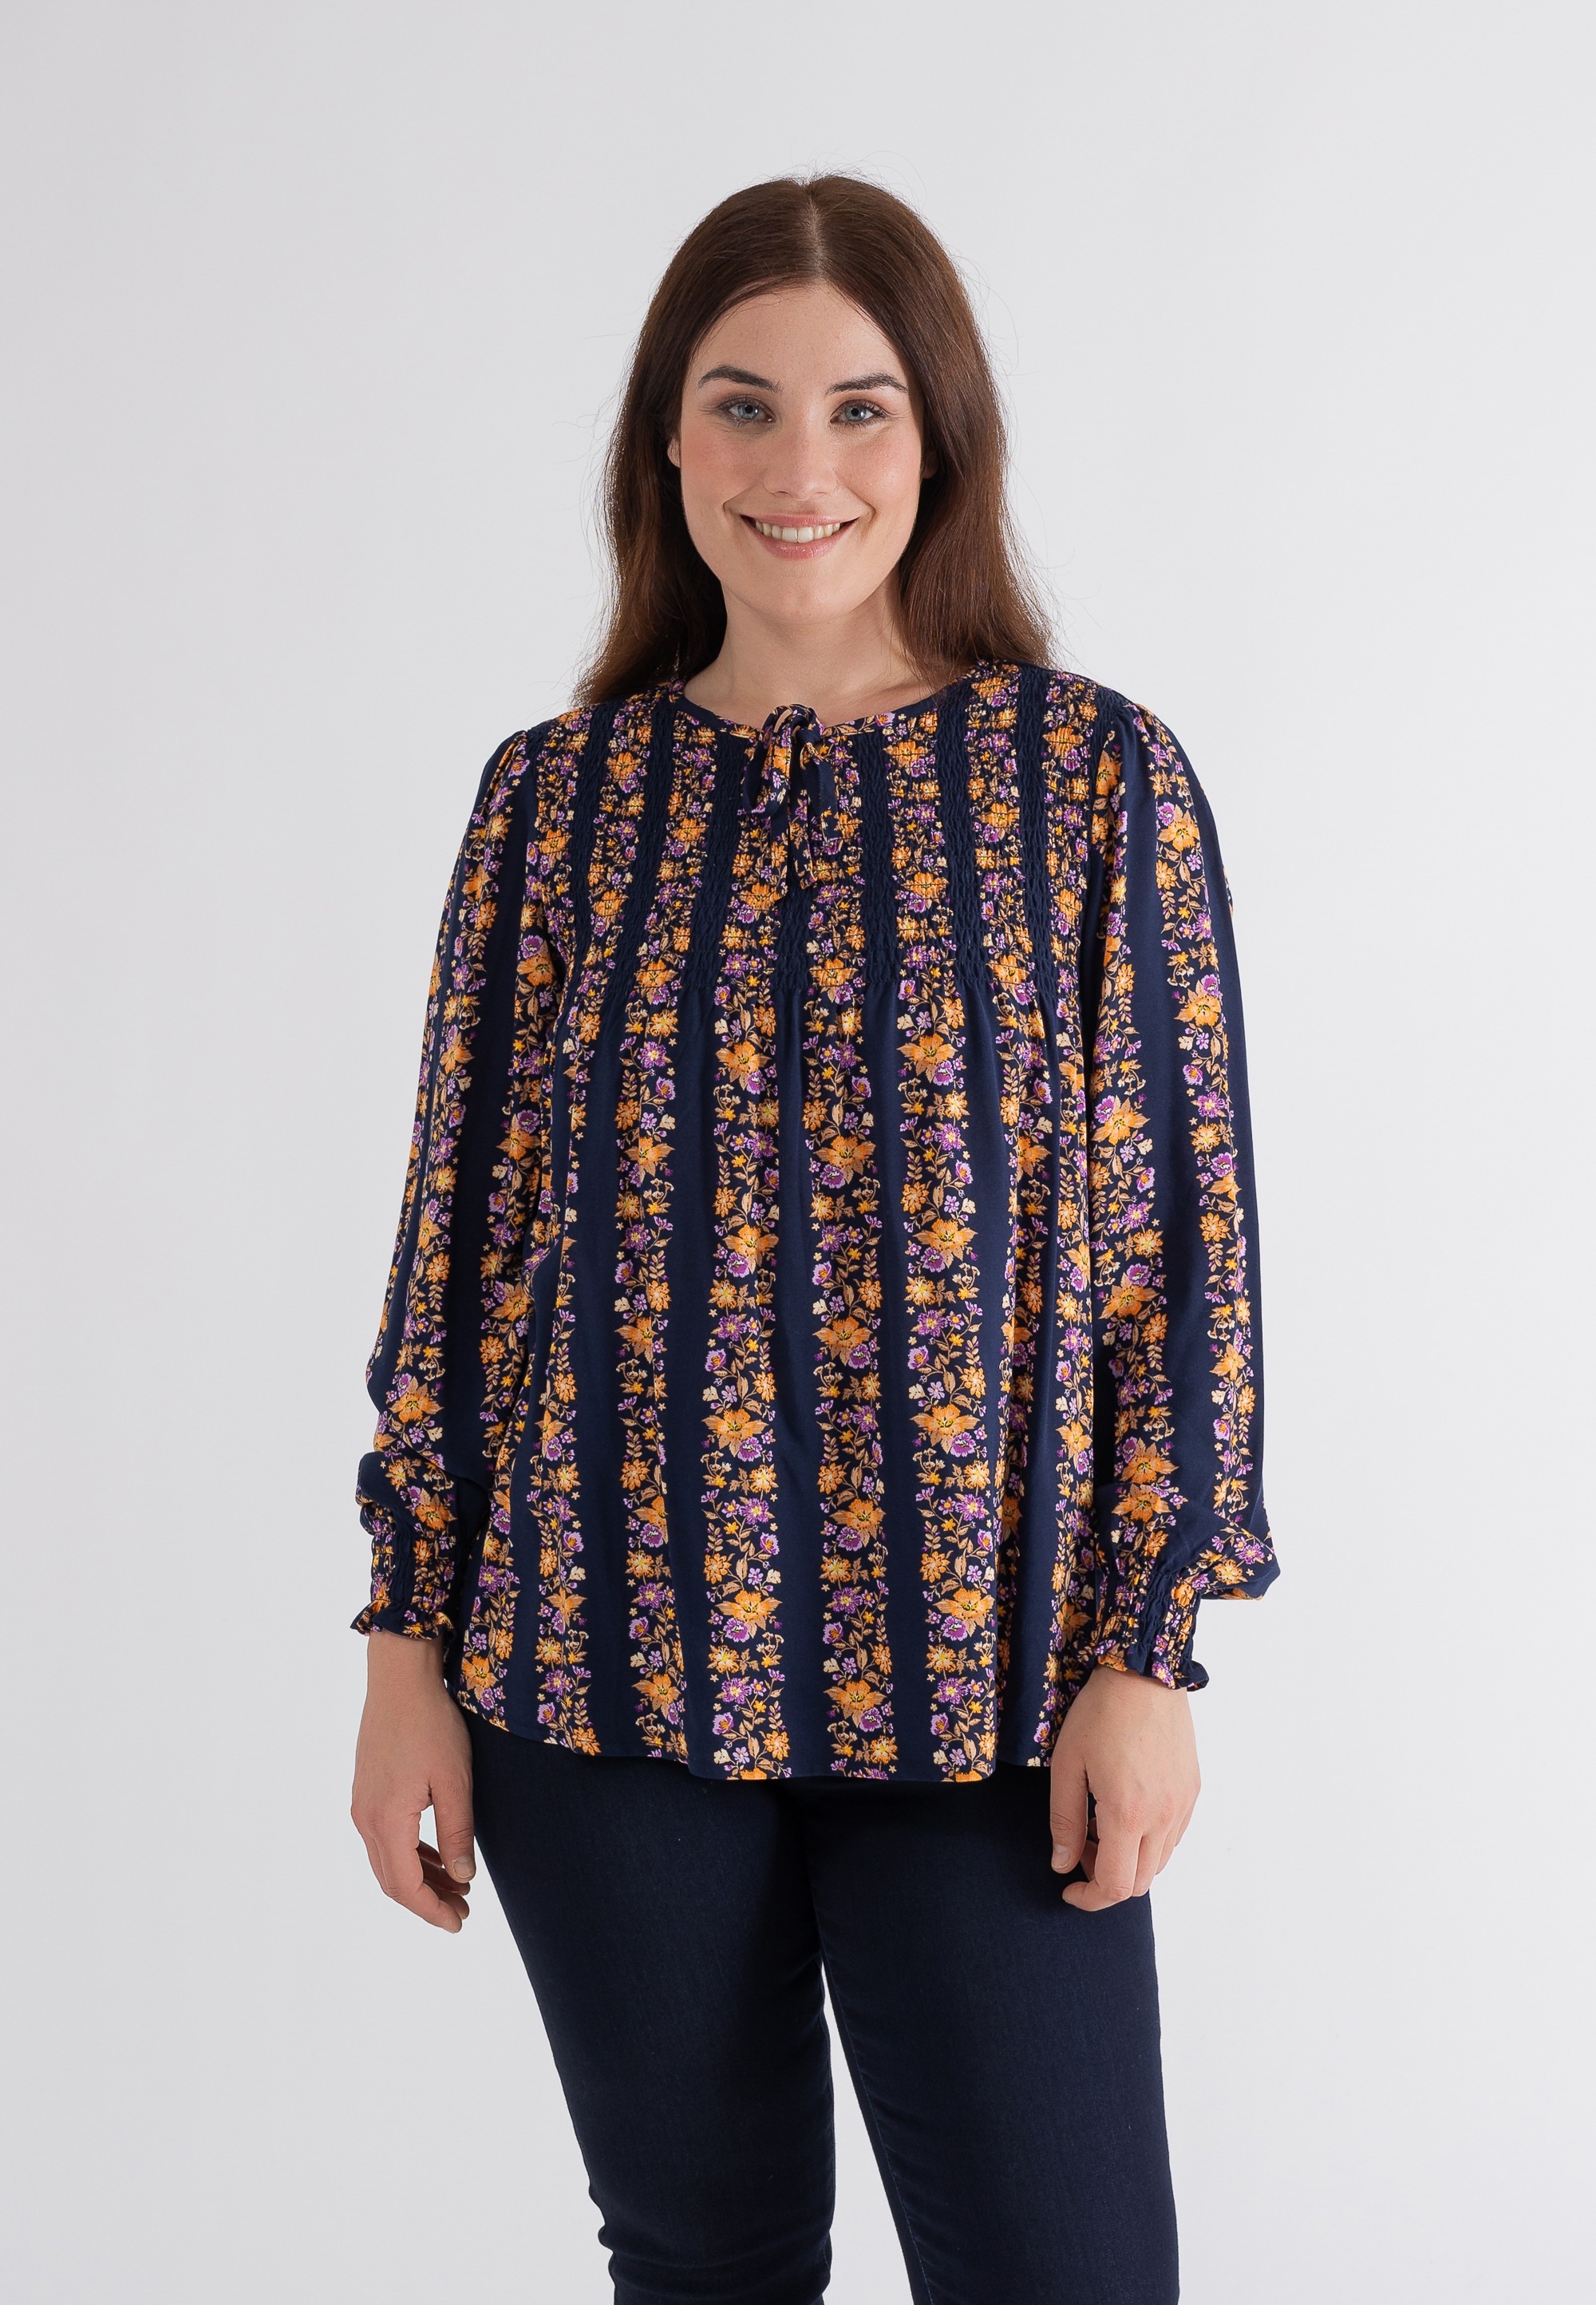 Klassische Bluse, in tollem Streifen-Design mit floralem Print